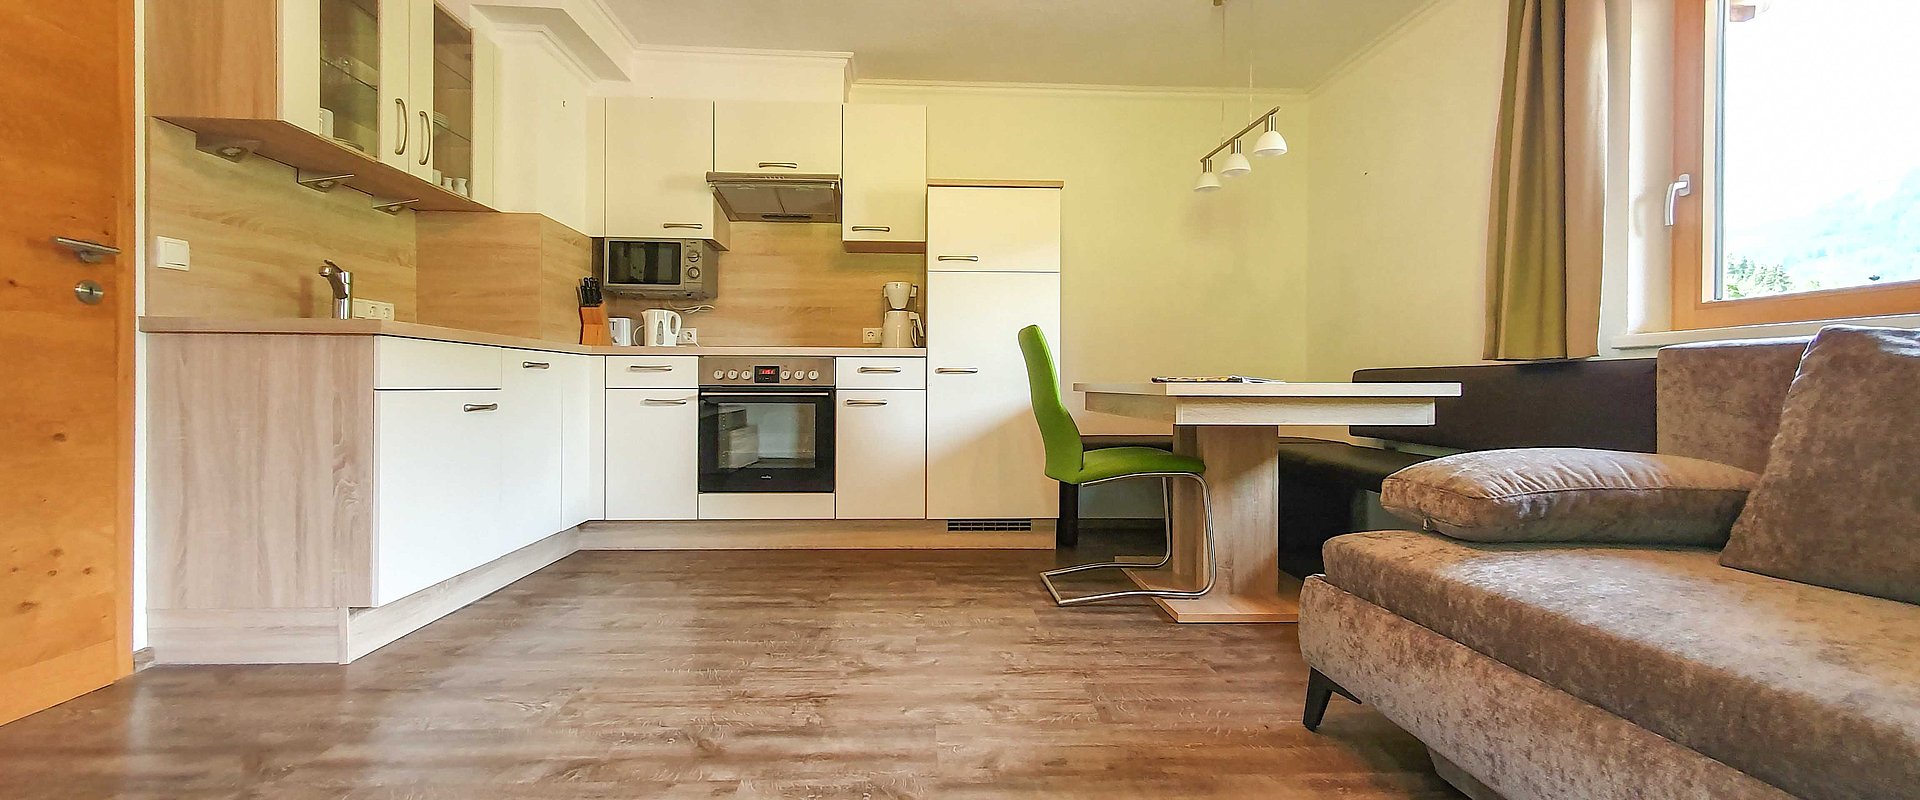 Voll ausgestattete Wohnküche inkl. Schlafcouch - Appartement Isskogel